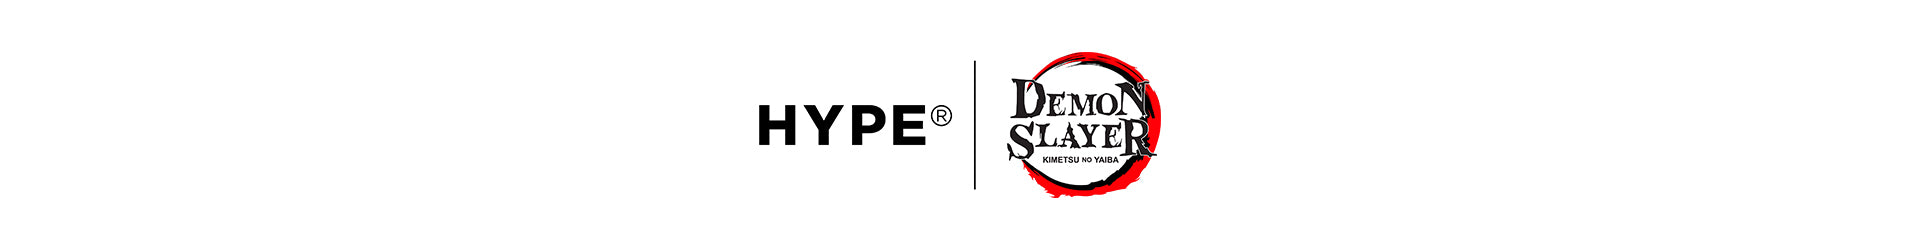 Hype x Demon Slayer